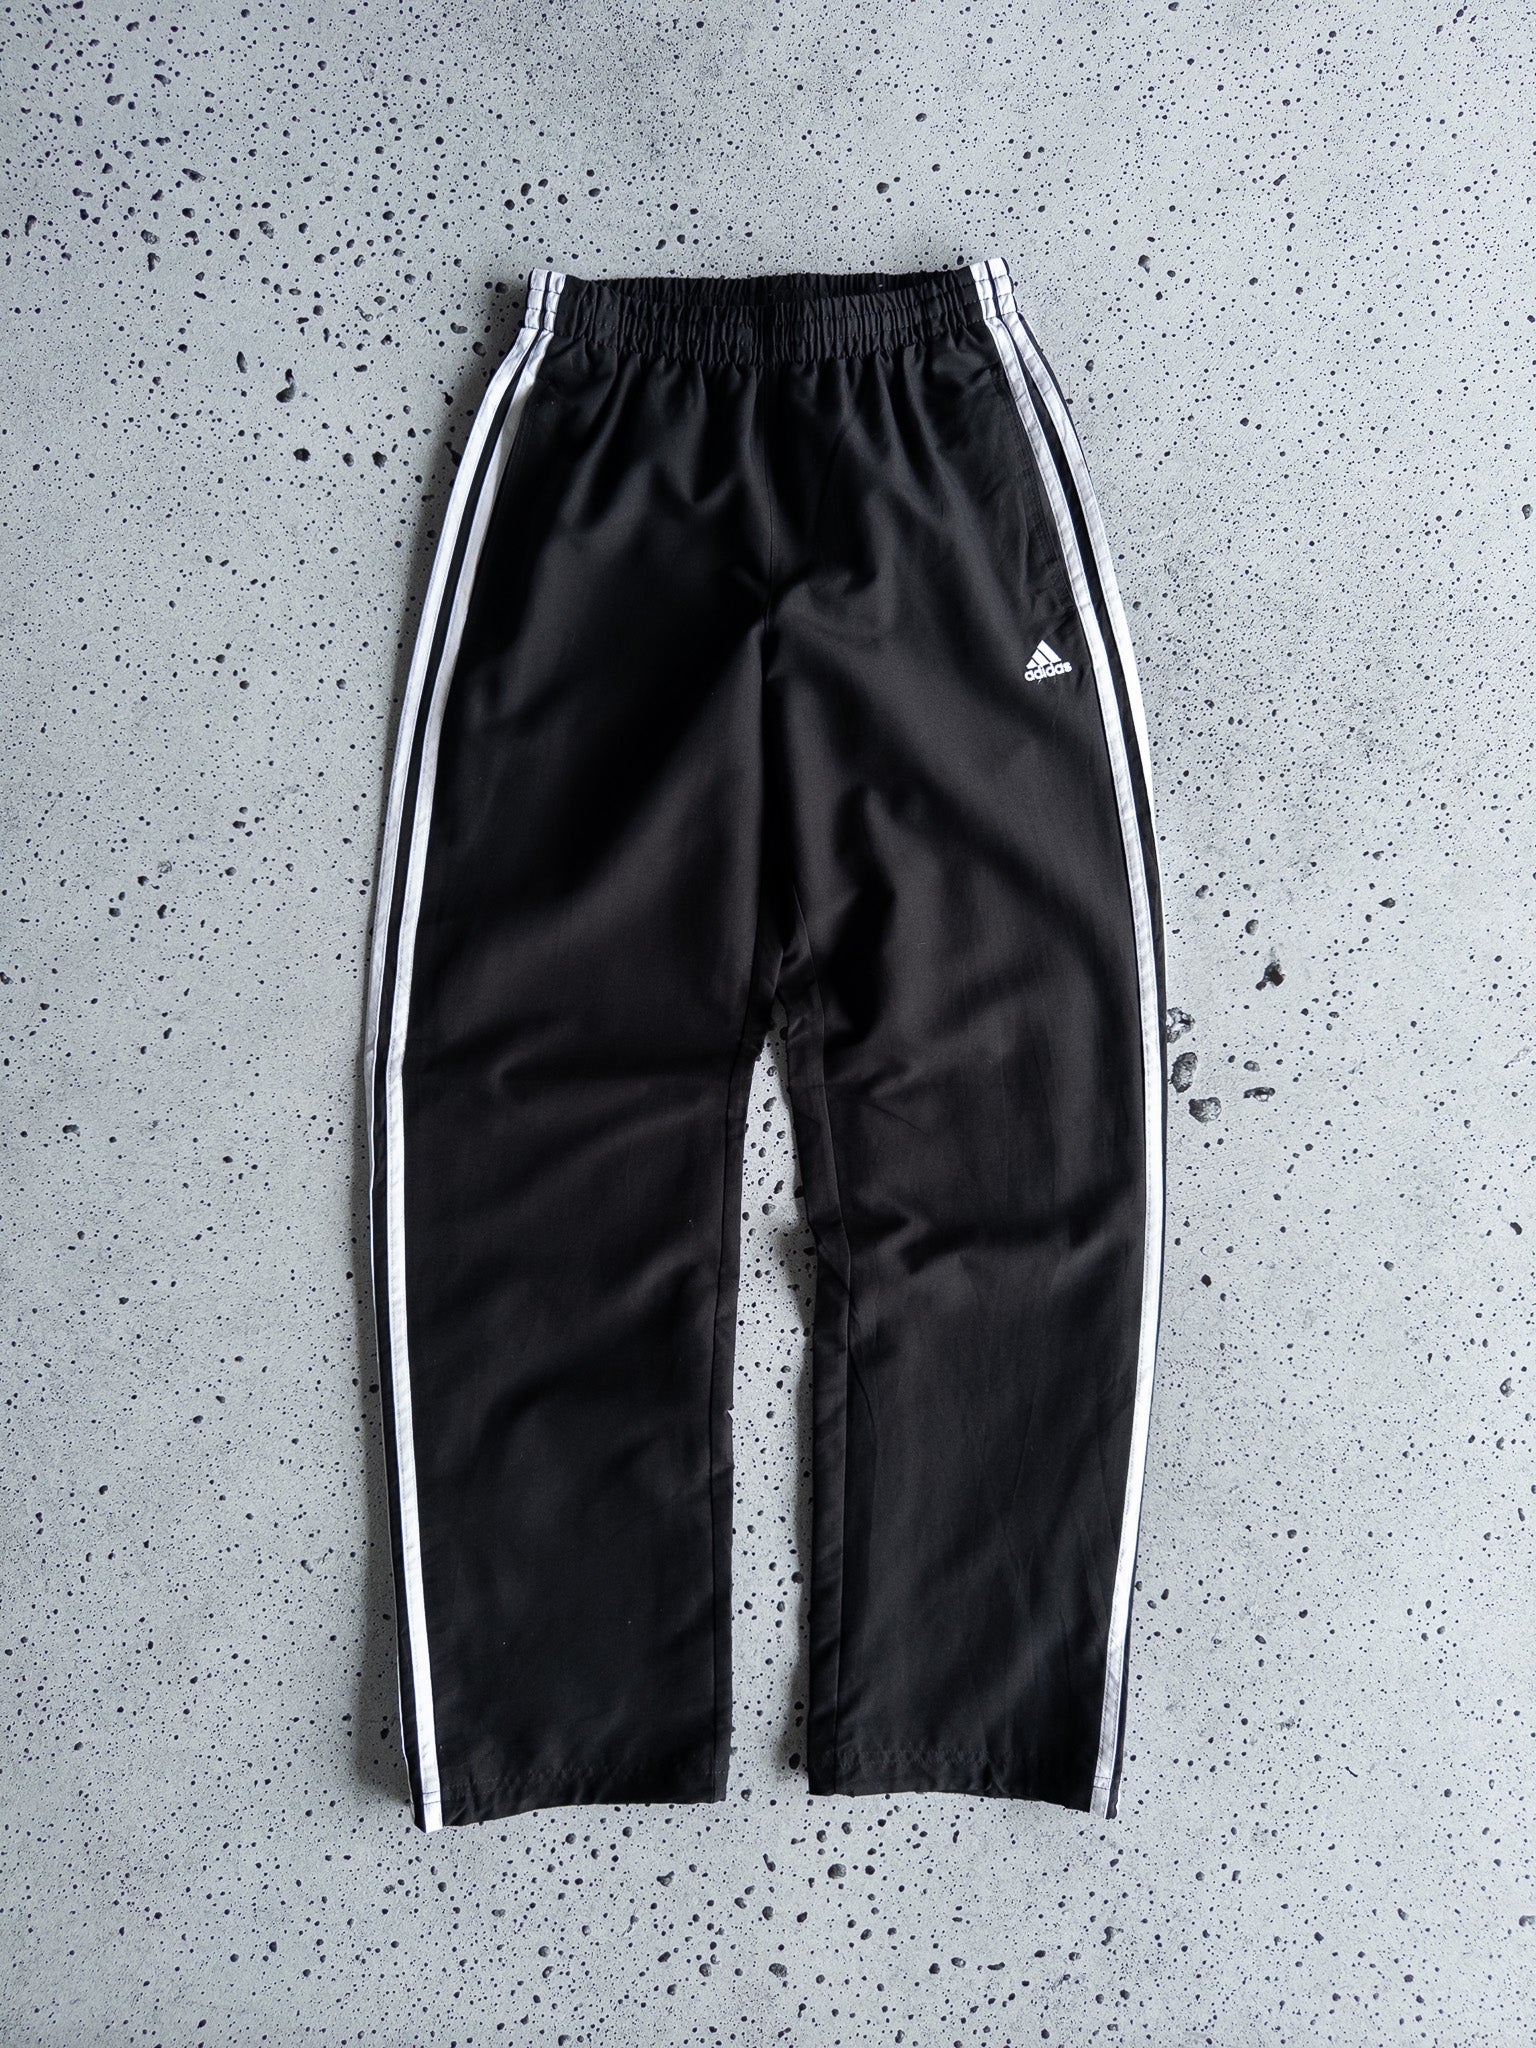 Vintage Adidas Track Pants (XS)